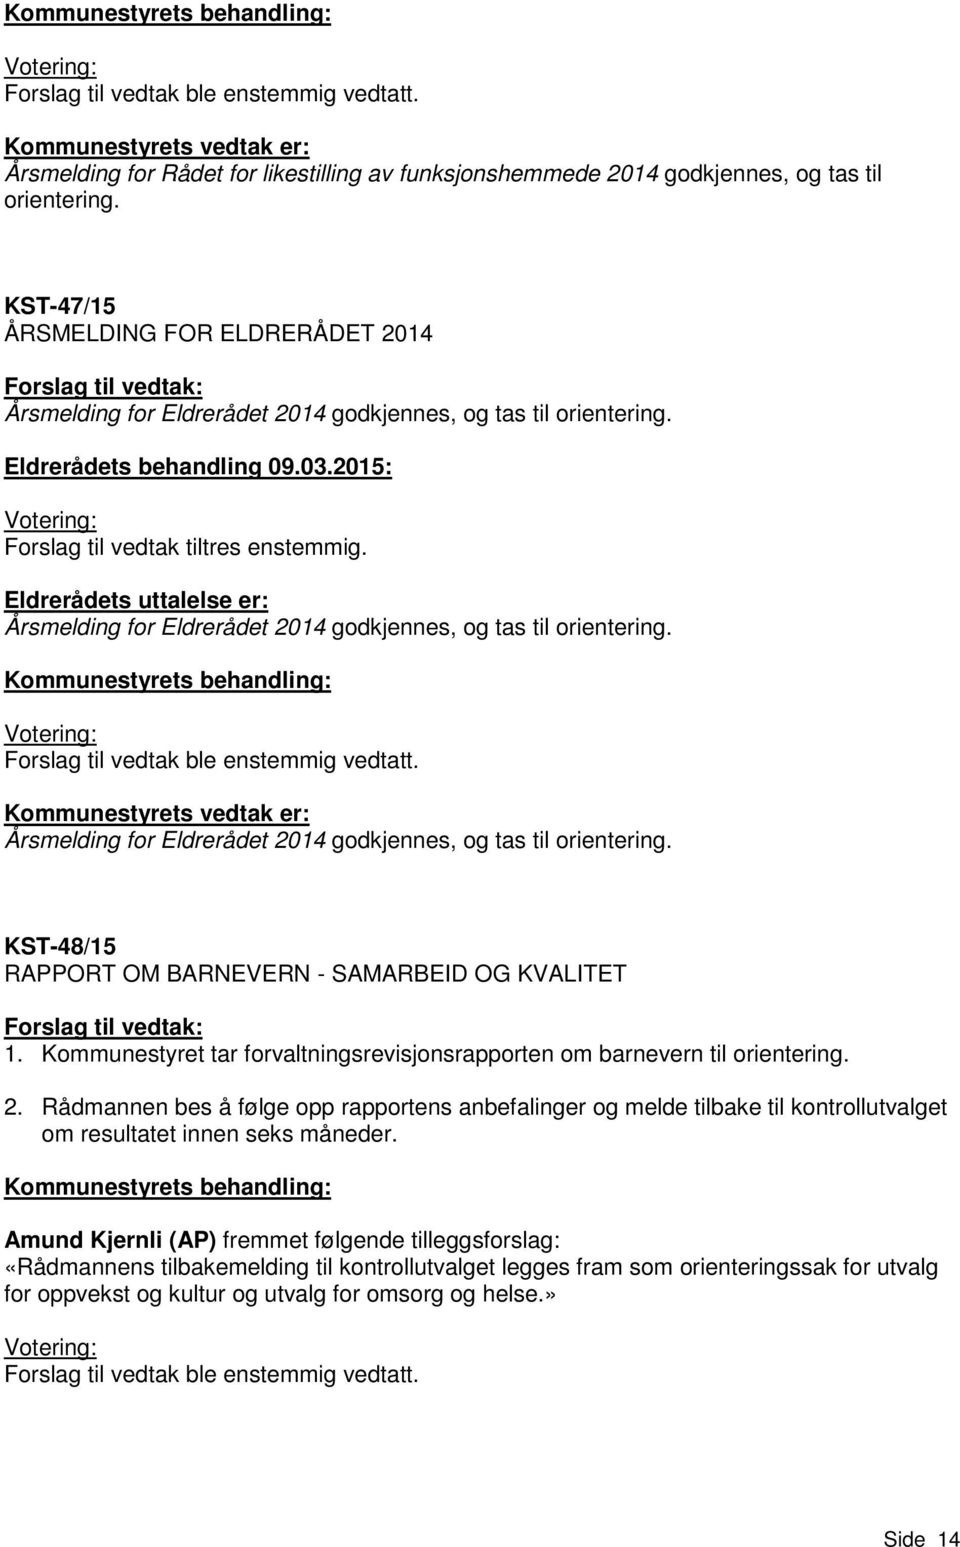 KST-47/15 ÅRSMELDING FOR ELDRERÅDET 2014 Forslag til vedtak: Årsmelding for Eldrerådet 2014 godkjennes, og tas til orientering. Eldrerådets behandling 09.03.